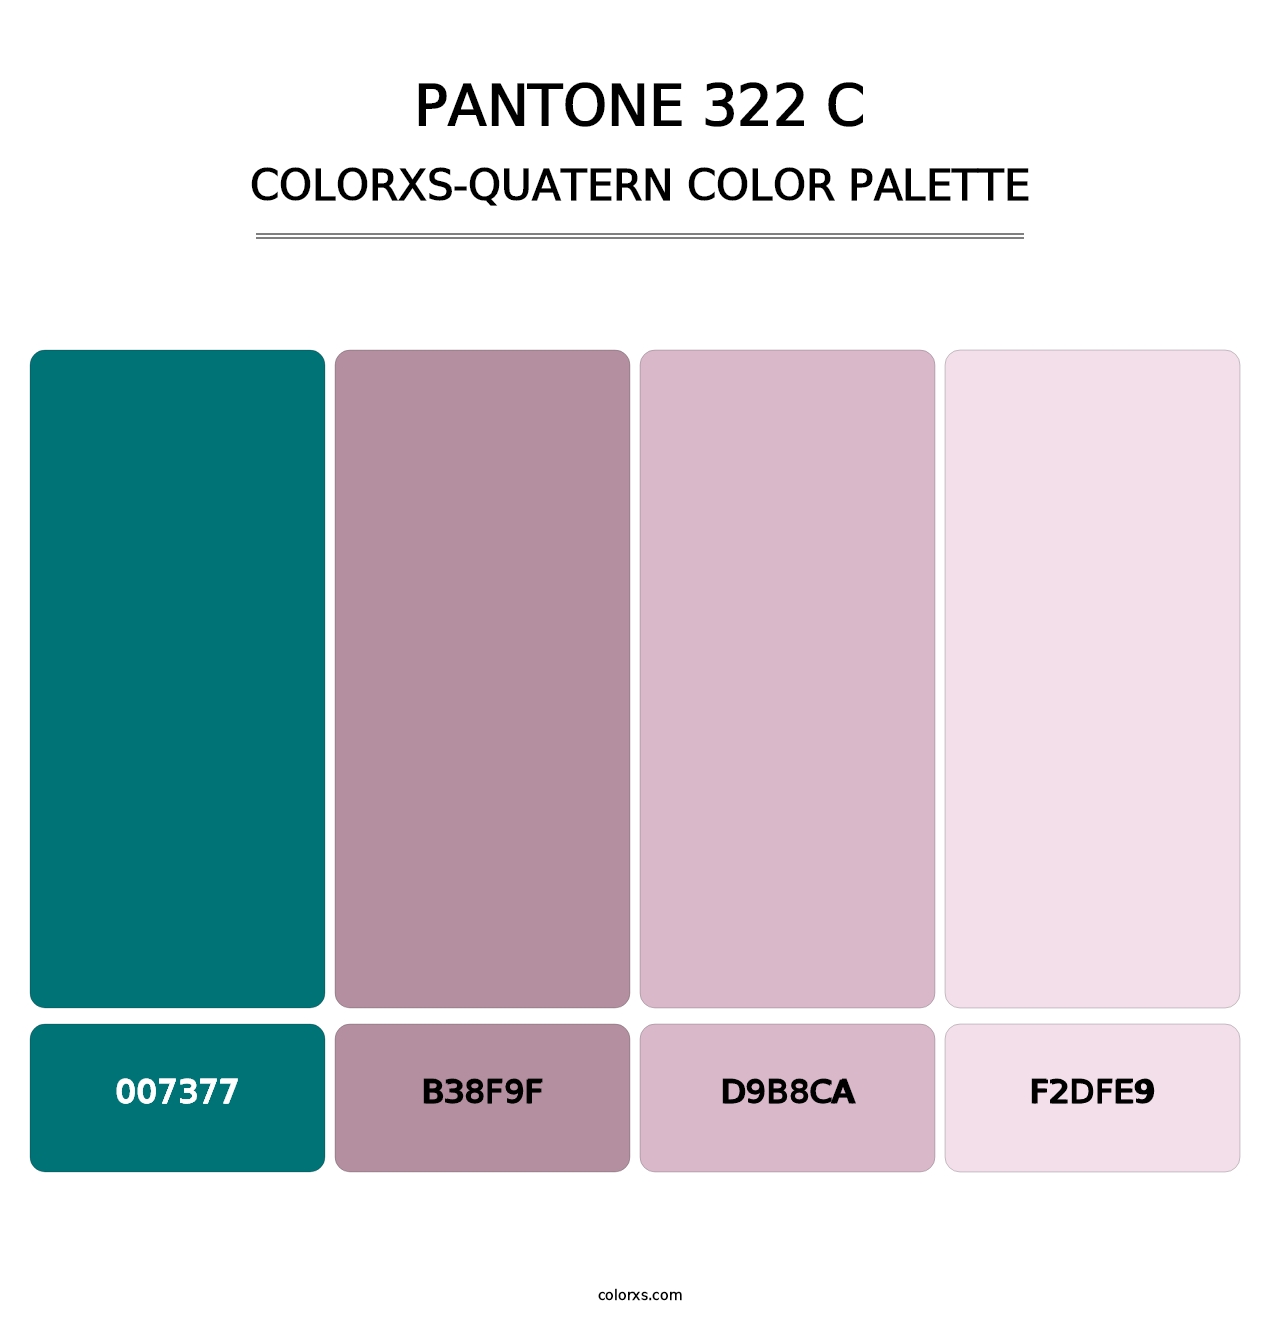 PANTONE 322 C - Colorxs Quatern Palette